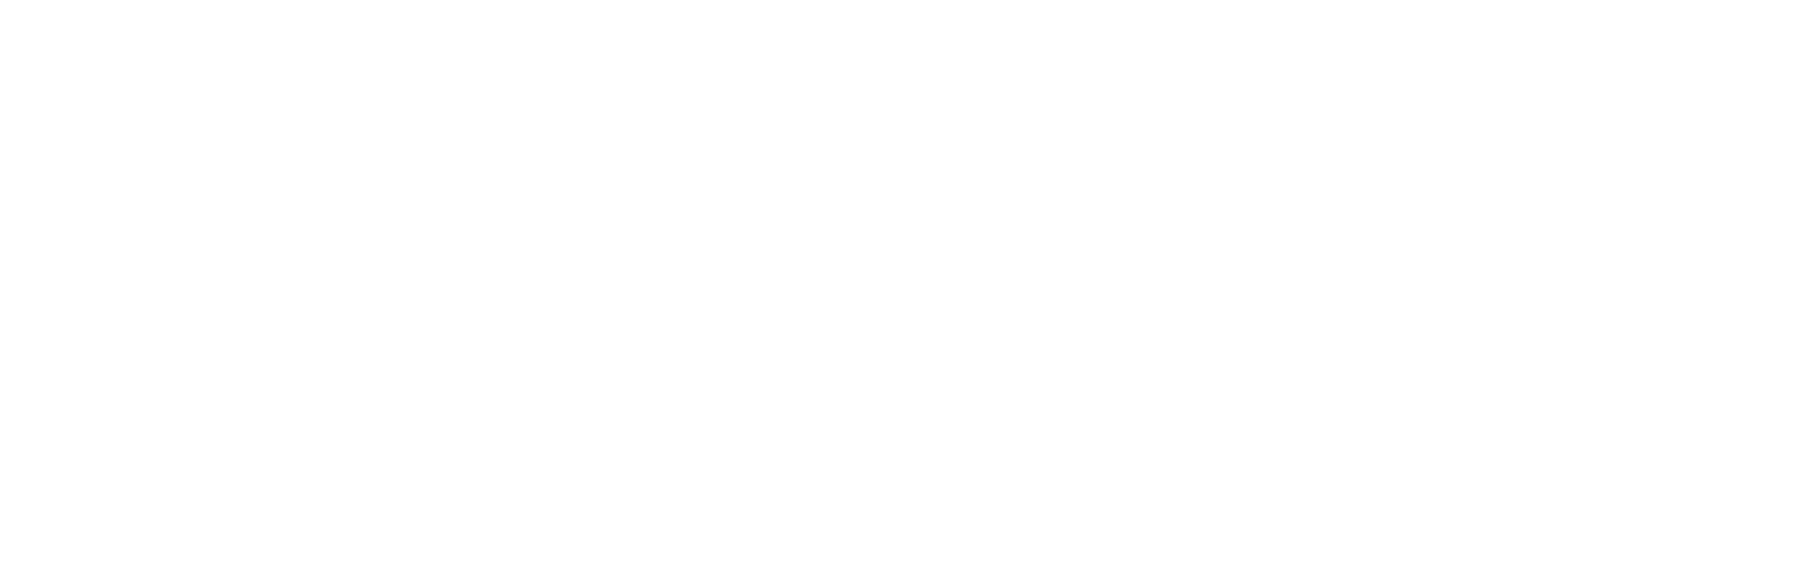 (c) 1800violins.com